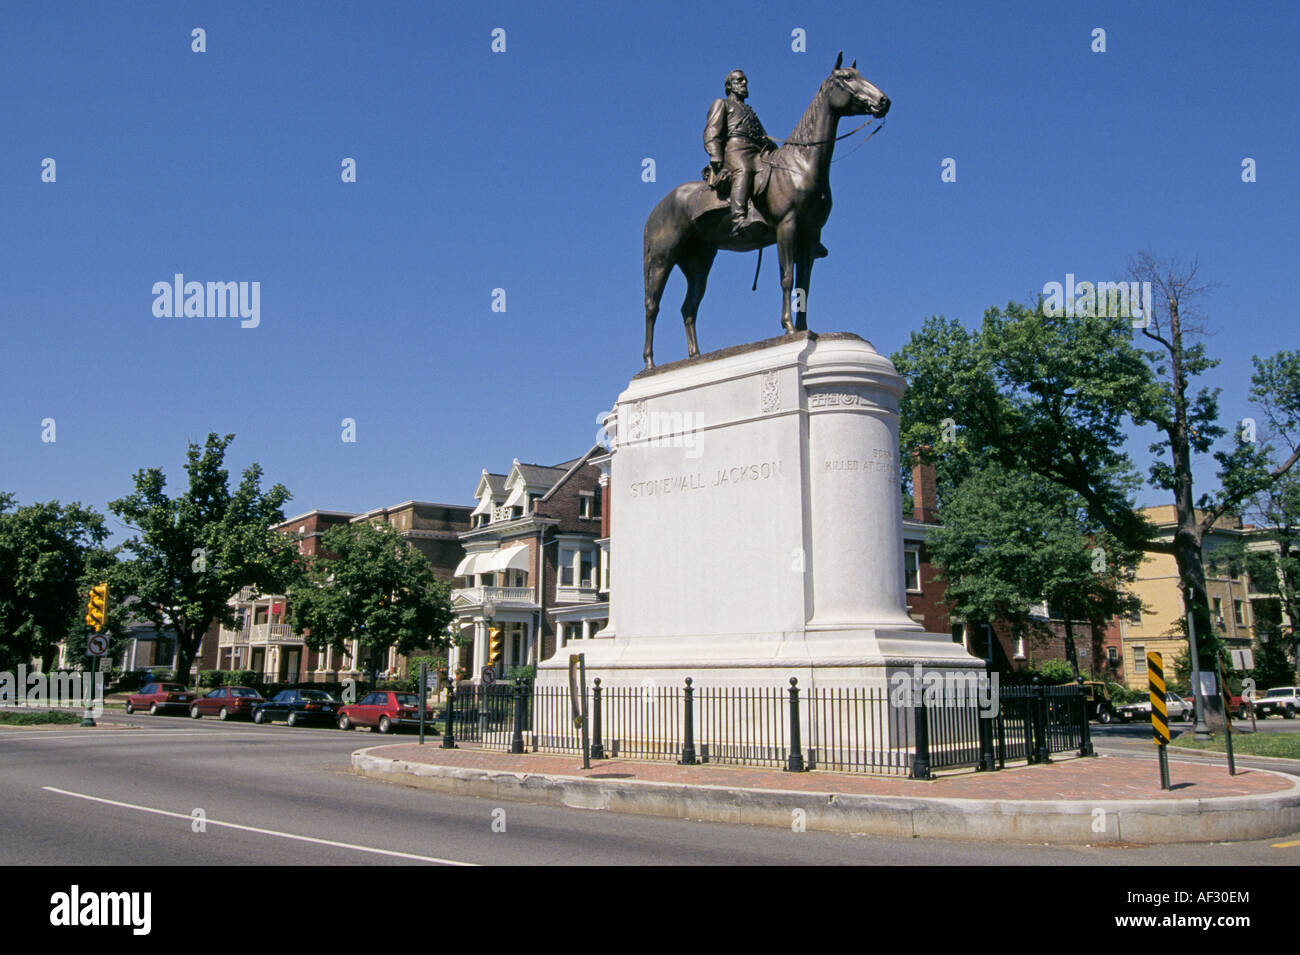 Une statue de Stonewall Jackson à bord de son cheval dans une rue de Richmond en Virginie Banque D'Images